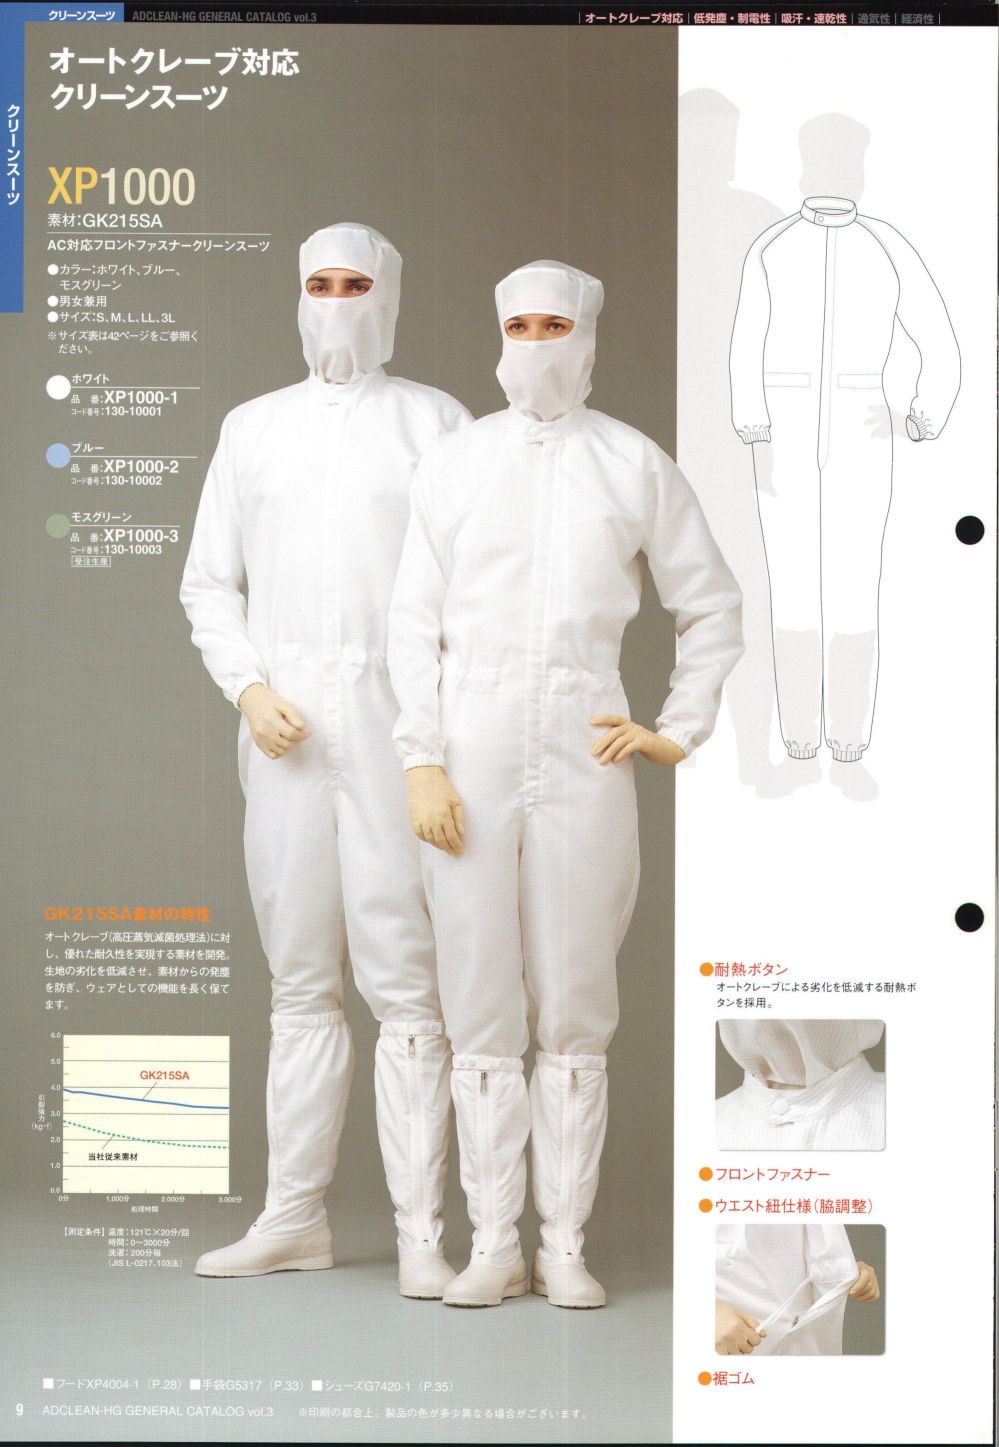 ユニフォーム1.COM 食品白衣jp クリーンウェア アドクリーン ホワイト